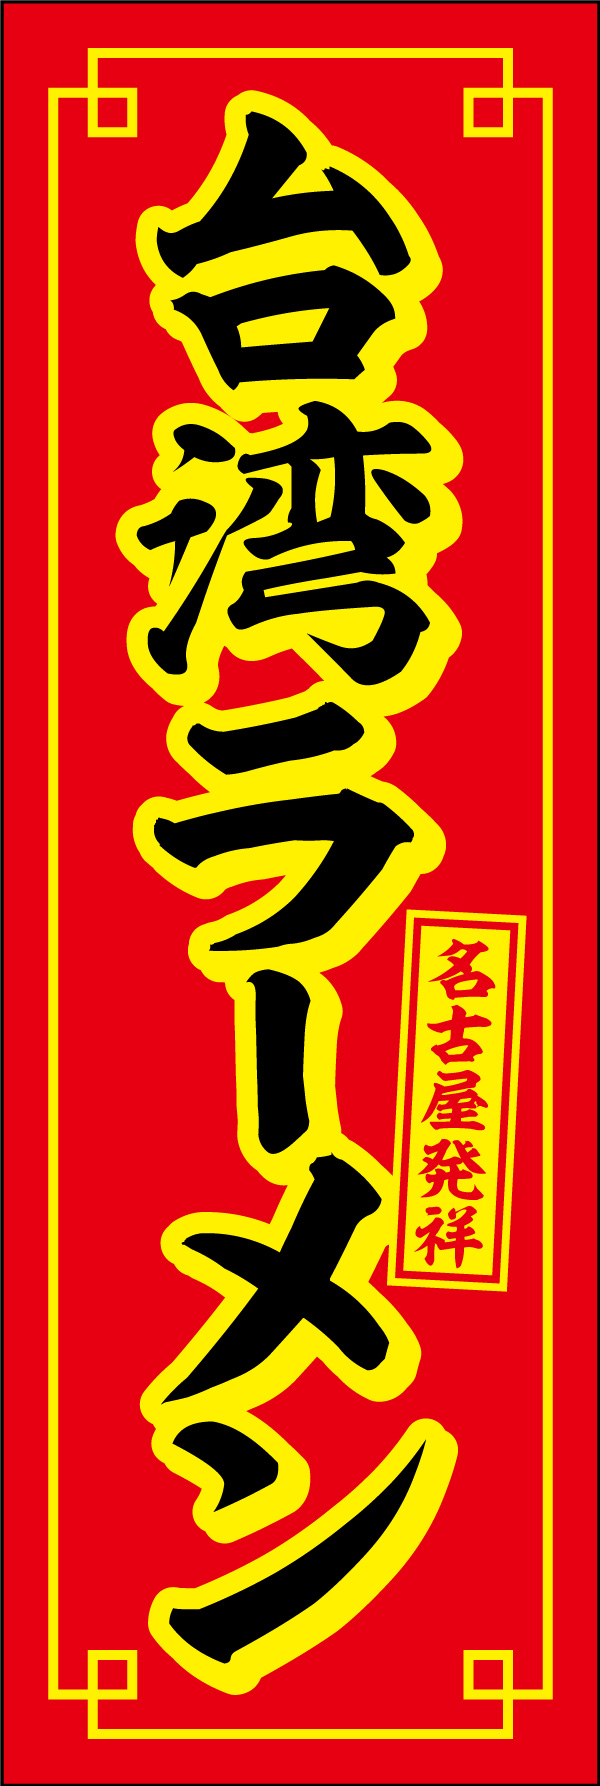 台湾ラーメン 02 「台湾ラーメン」の幟です。台湾ラーメン発祥の名古屋でよく使用されているカラーリングを意識し、本場の味が楽しめるお店のアイコンとしてデザインしました。(Y.M)